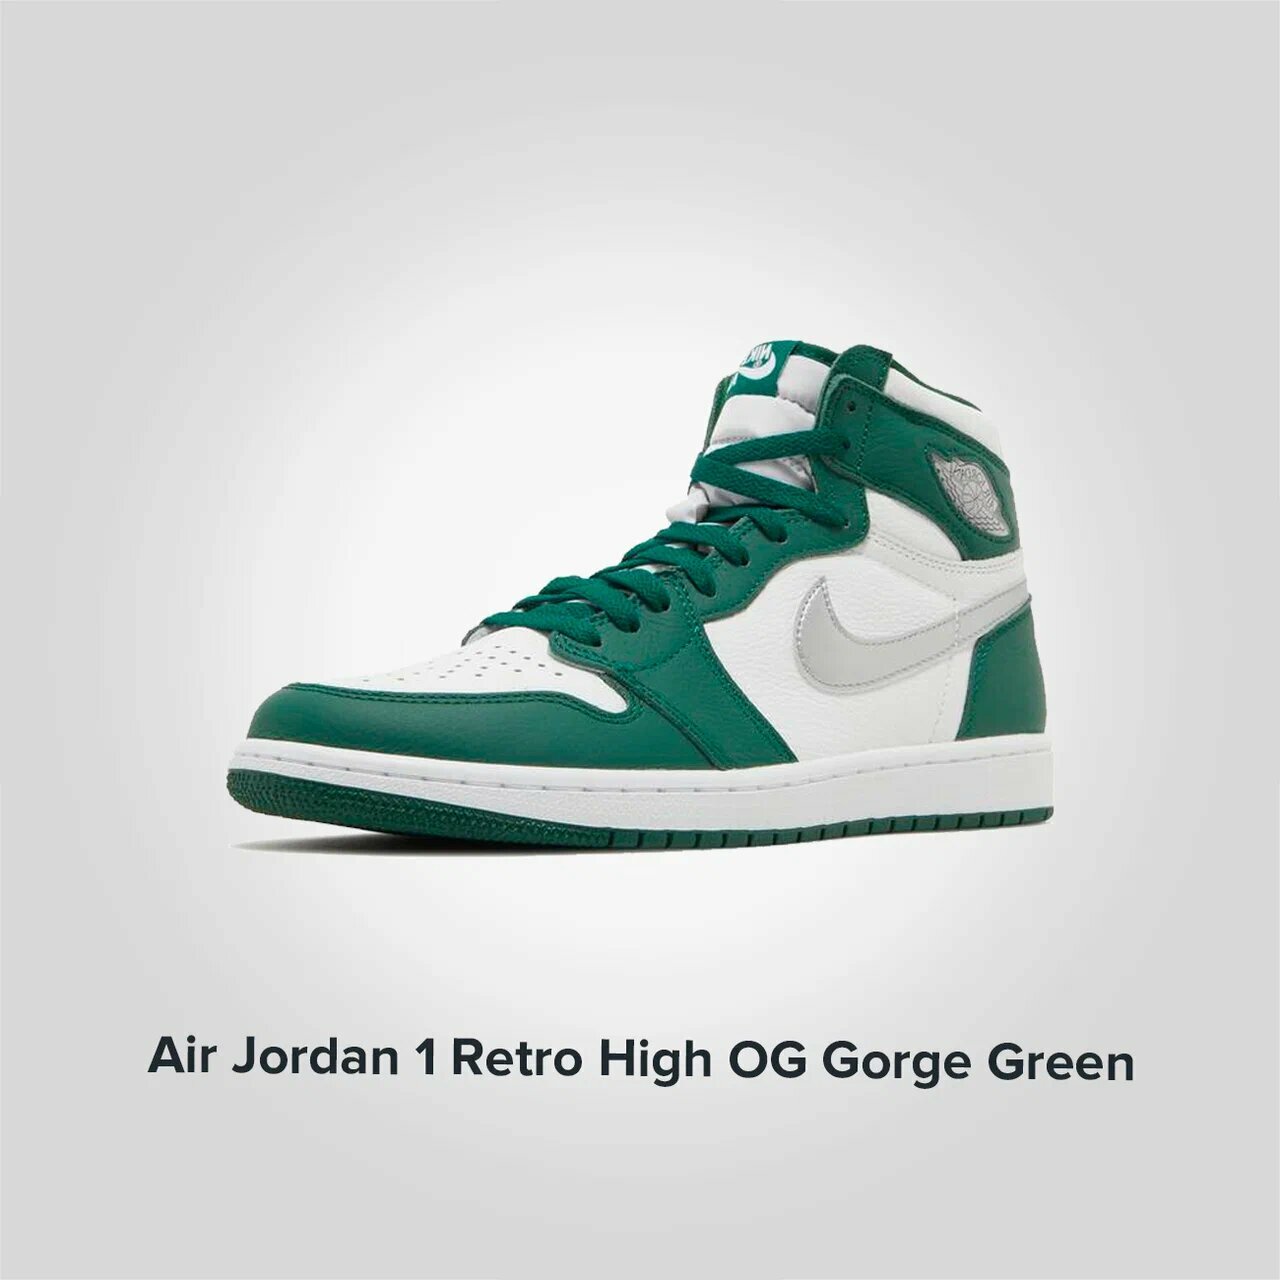 Jordan 1 Retro High OG Gorge Green